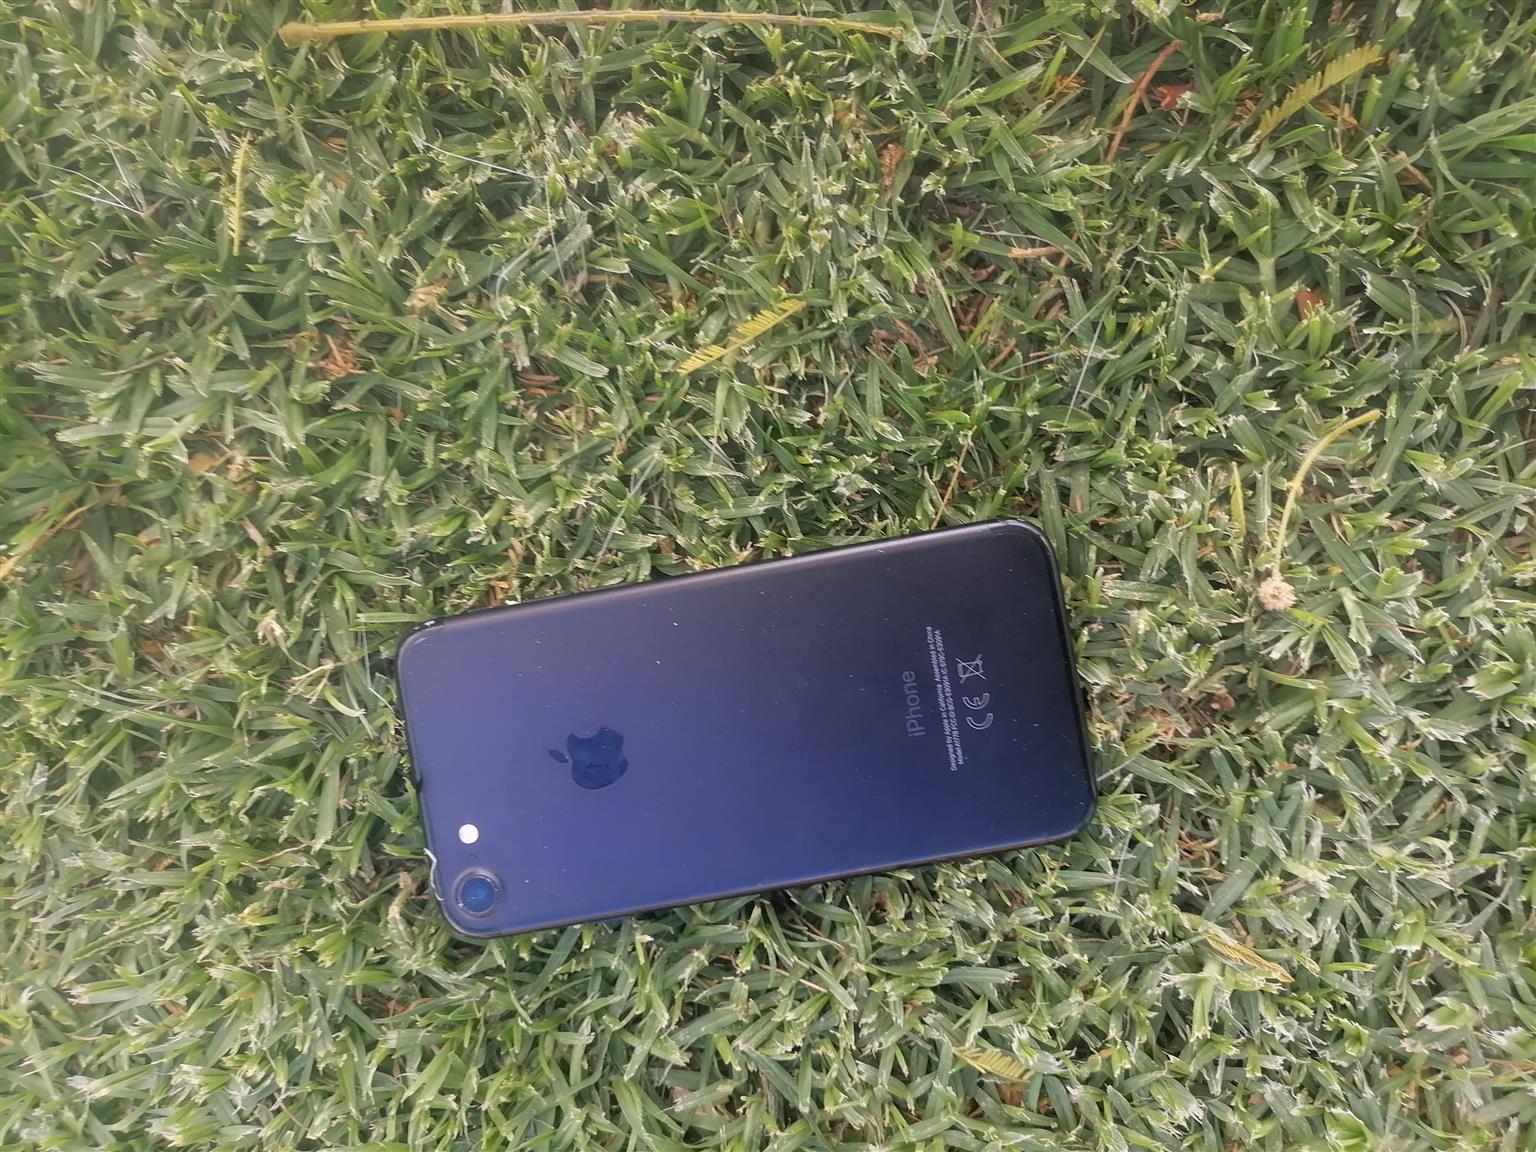 I phone 7 